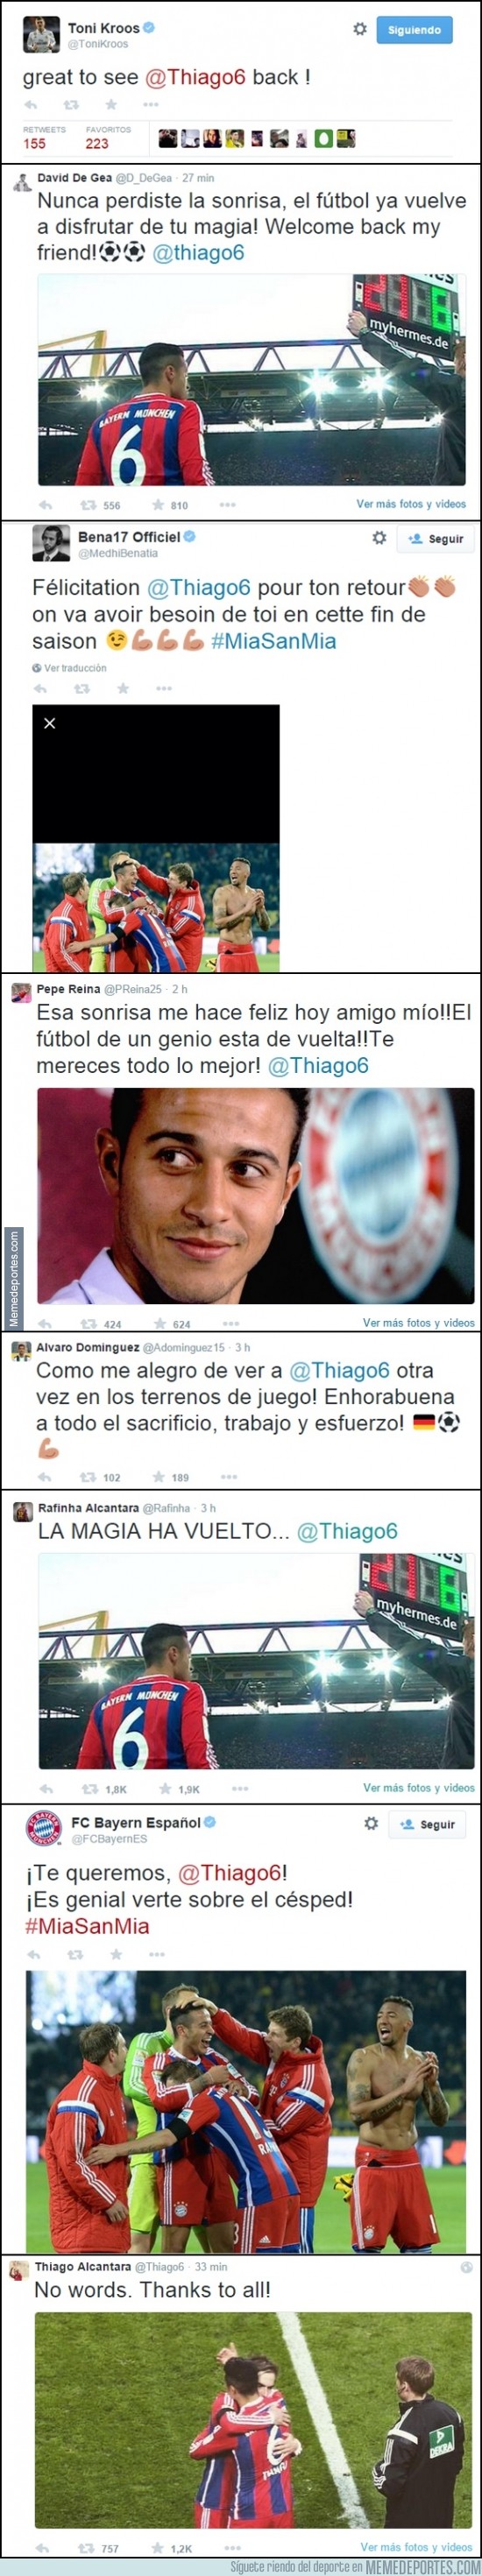 498570 - El mundo del fútbol da la bienvenida a Thiago en twitter